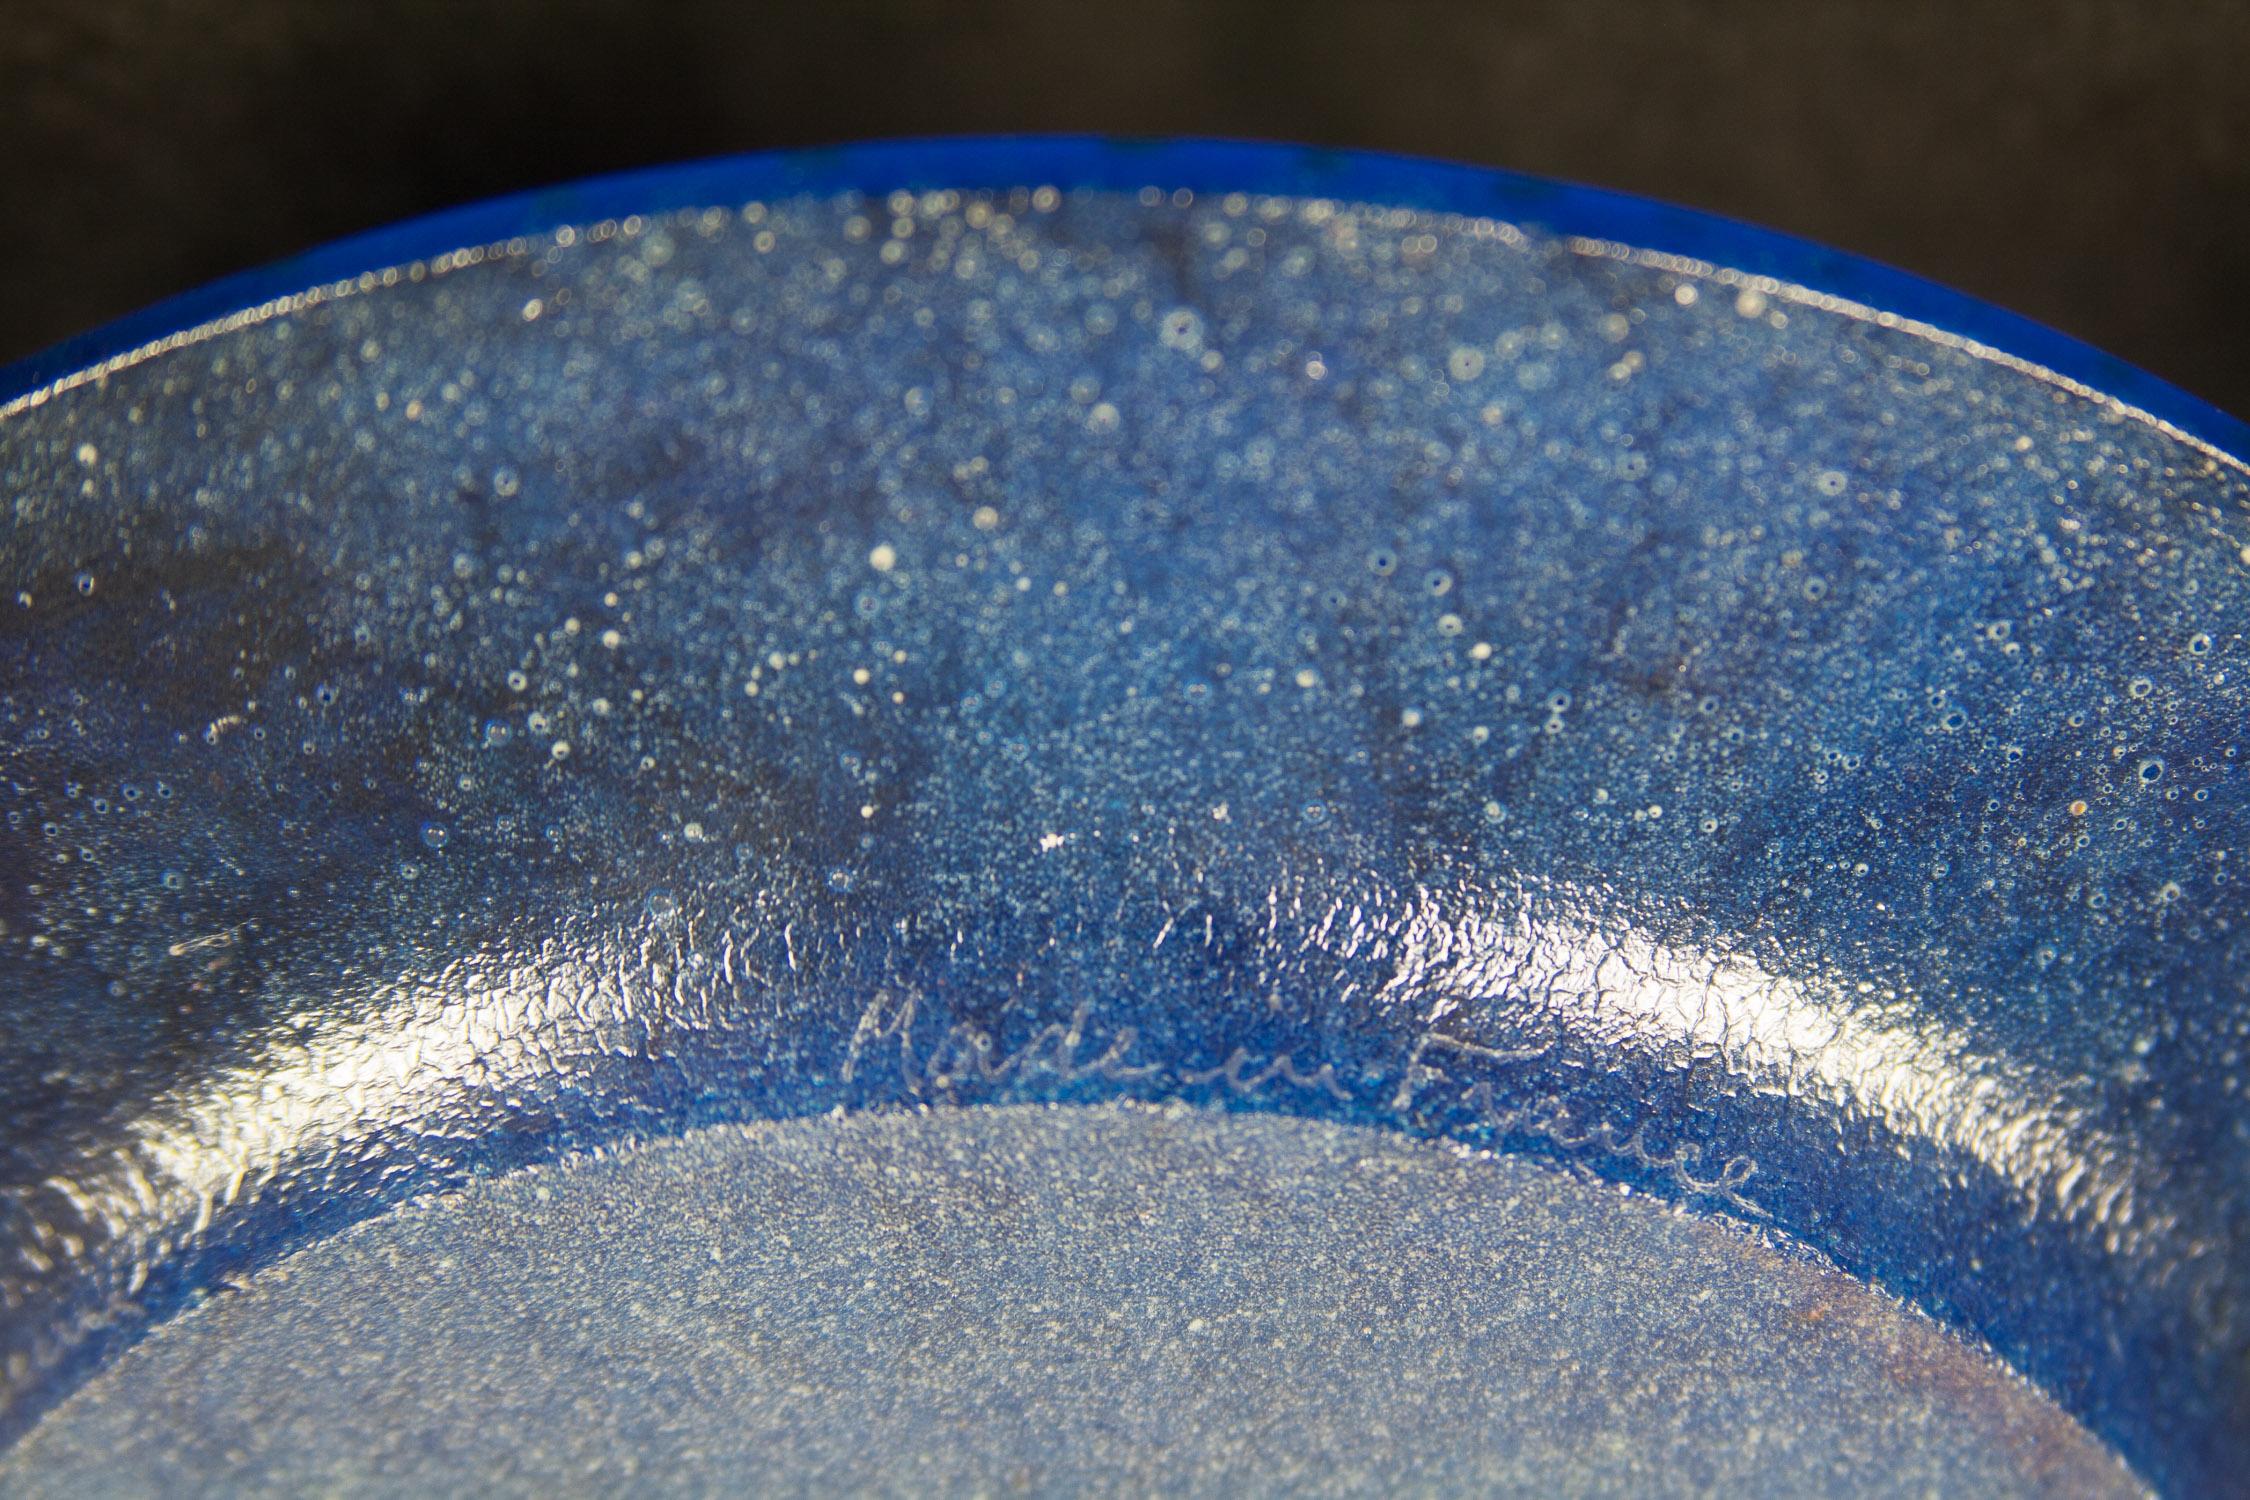  Plaque de verre fondu....Triomphale ..... Bleu et or de Salvador Dali
 Assiette Daum en édition limitée en verre texturé bleu Pate-de-Verre avec reflets dorés   Fabriqué en France en 1970.  Diamètre de 10,5 pouces. Édition limitée le dessous est